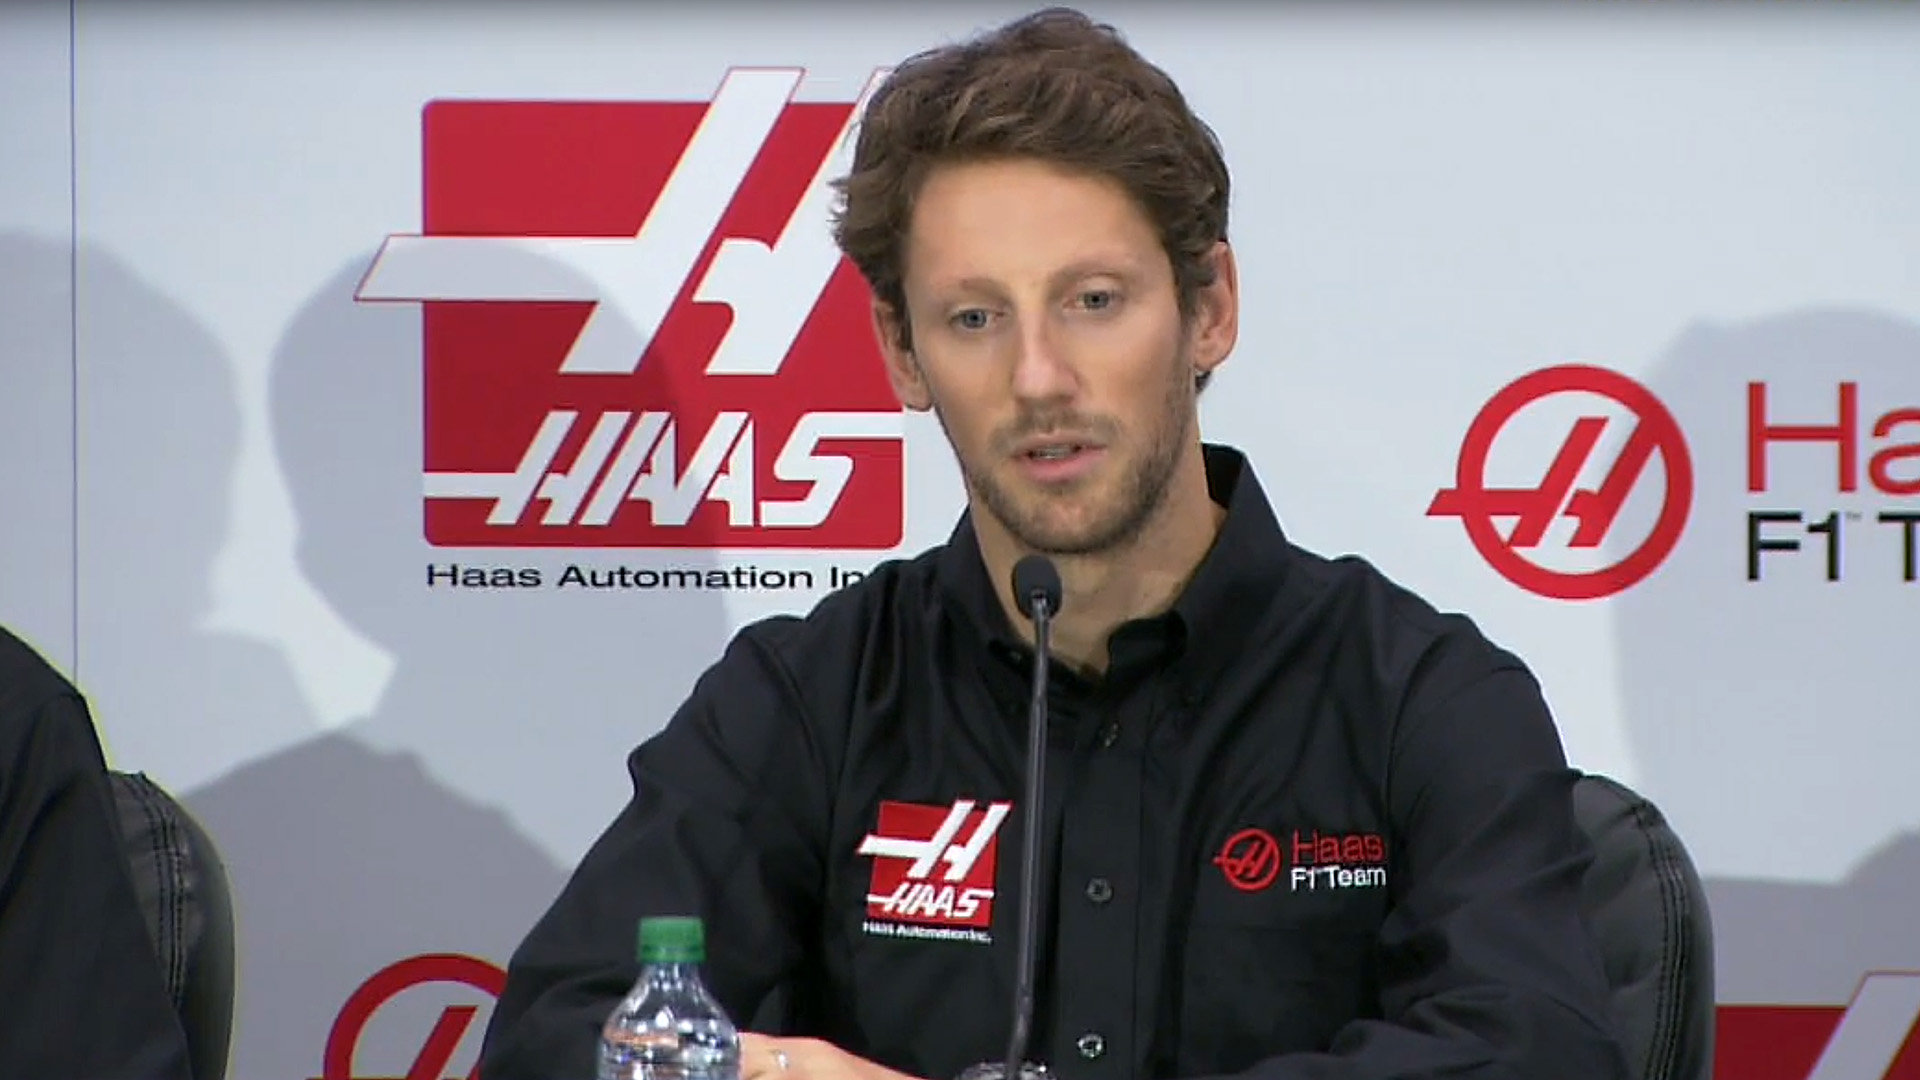 Romain Grosjean v barvách Haasu